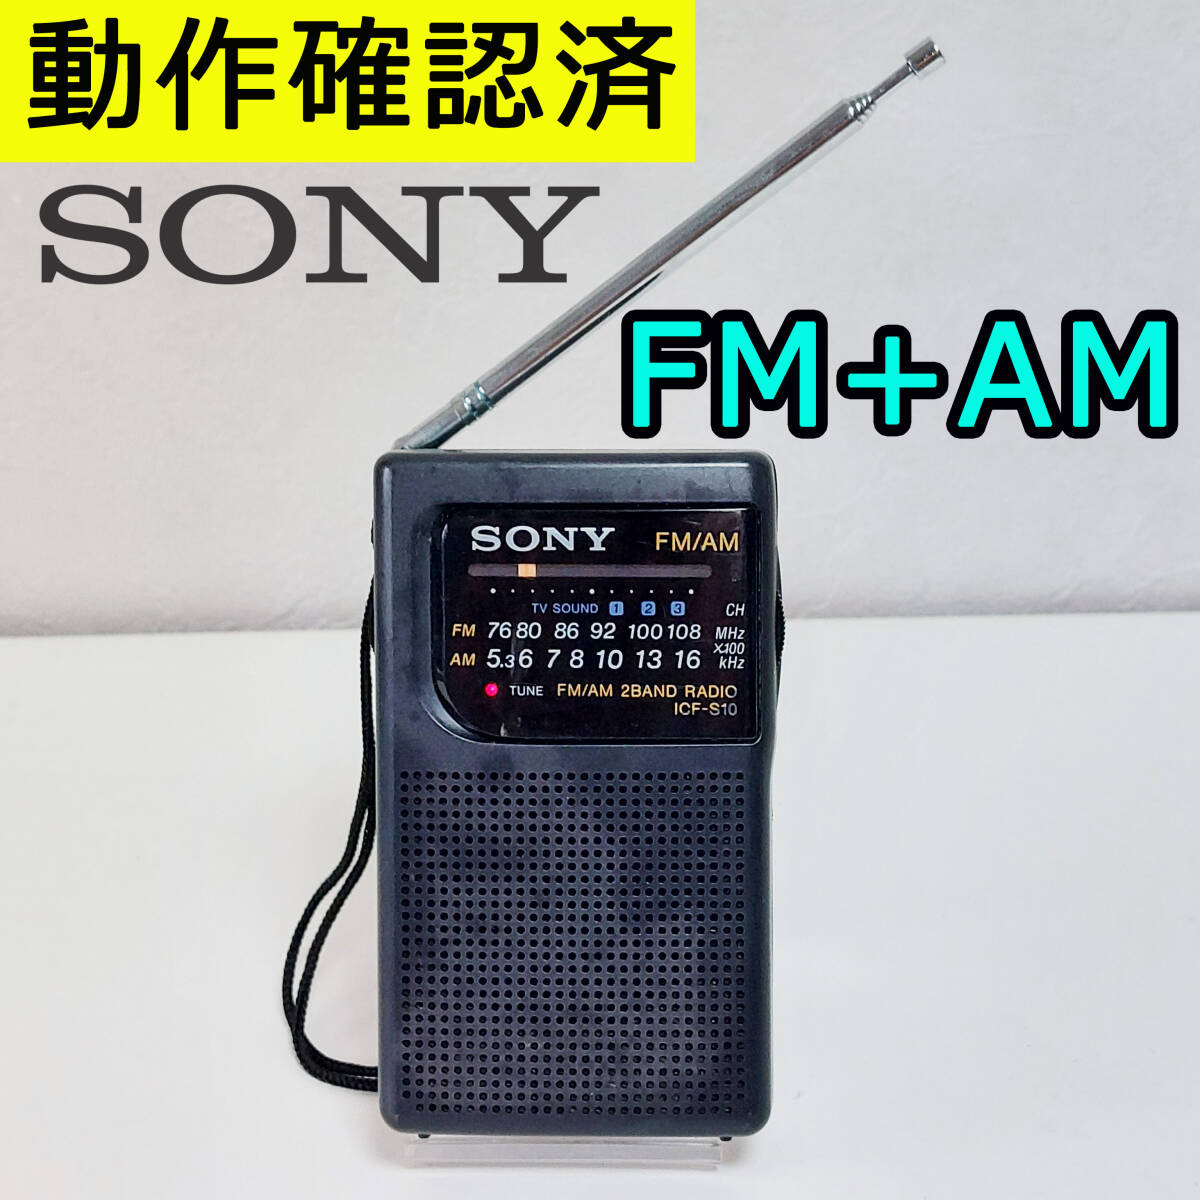 SONY FM/AMラジオ ICF-S10 ソニーAM FMラジオ 動作確認済み_画像1